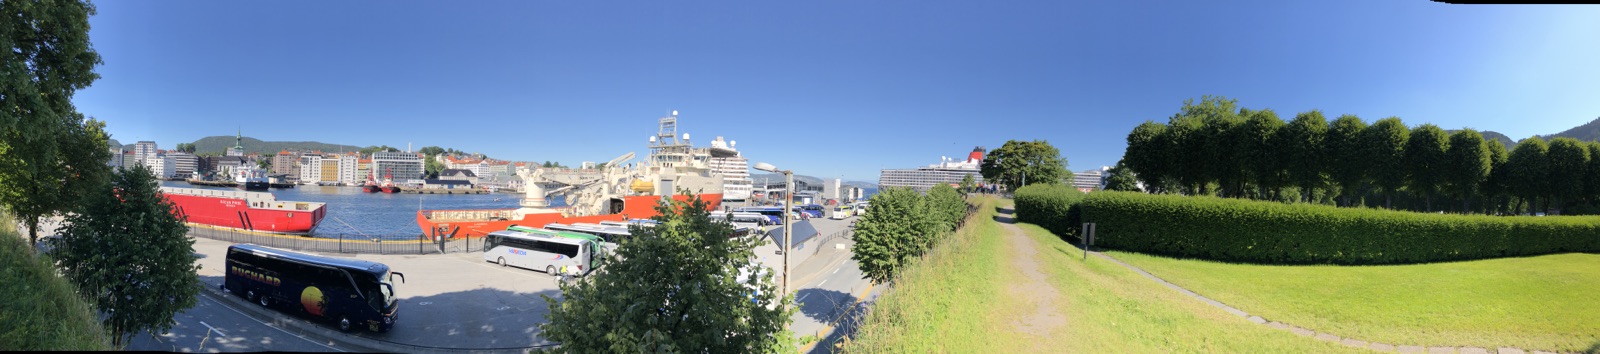 就在酒店旁边，塔楼在装修，可以眺望布吕根码头